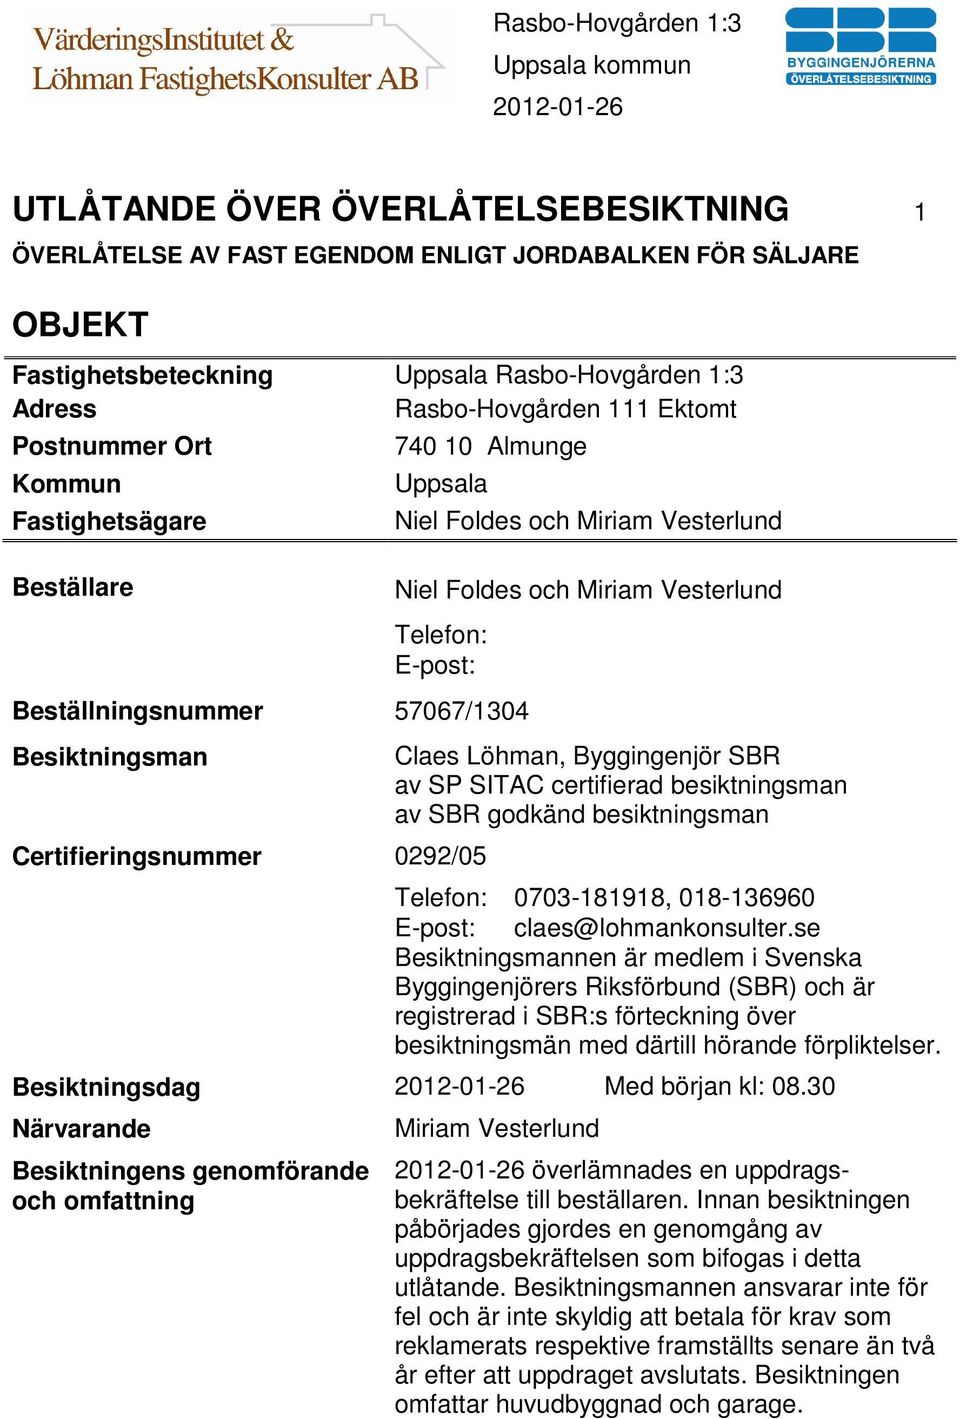 Certifieringsnummer 0292/05 Claes Löhman, Byggingenjör SBR av SP SITAC certifierad besiktningsman av SBR godkänd besiktningsman Telefon: 0703-181918, 018-136960 E-post: claes@lohmankonsulter.